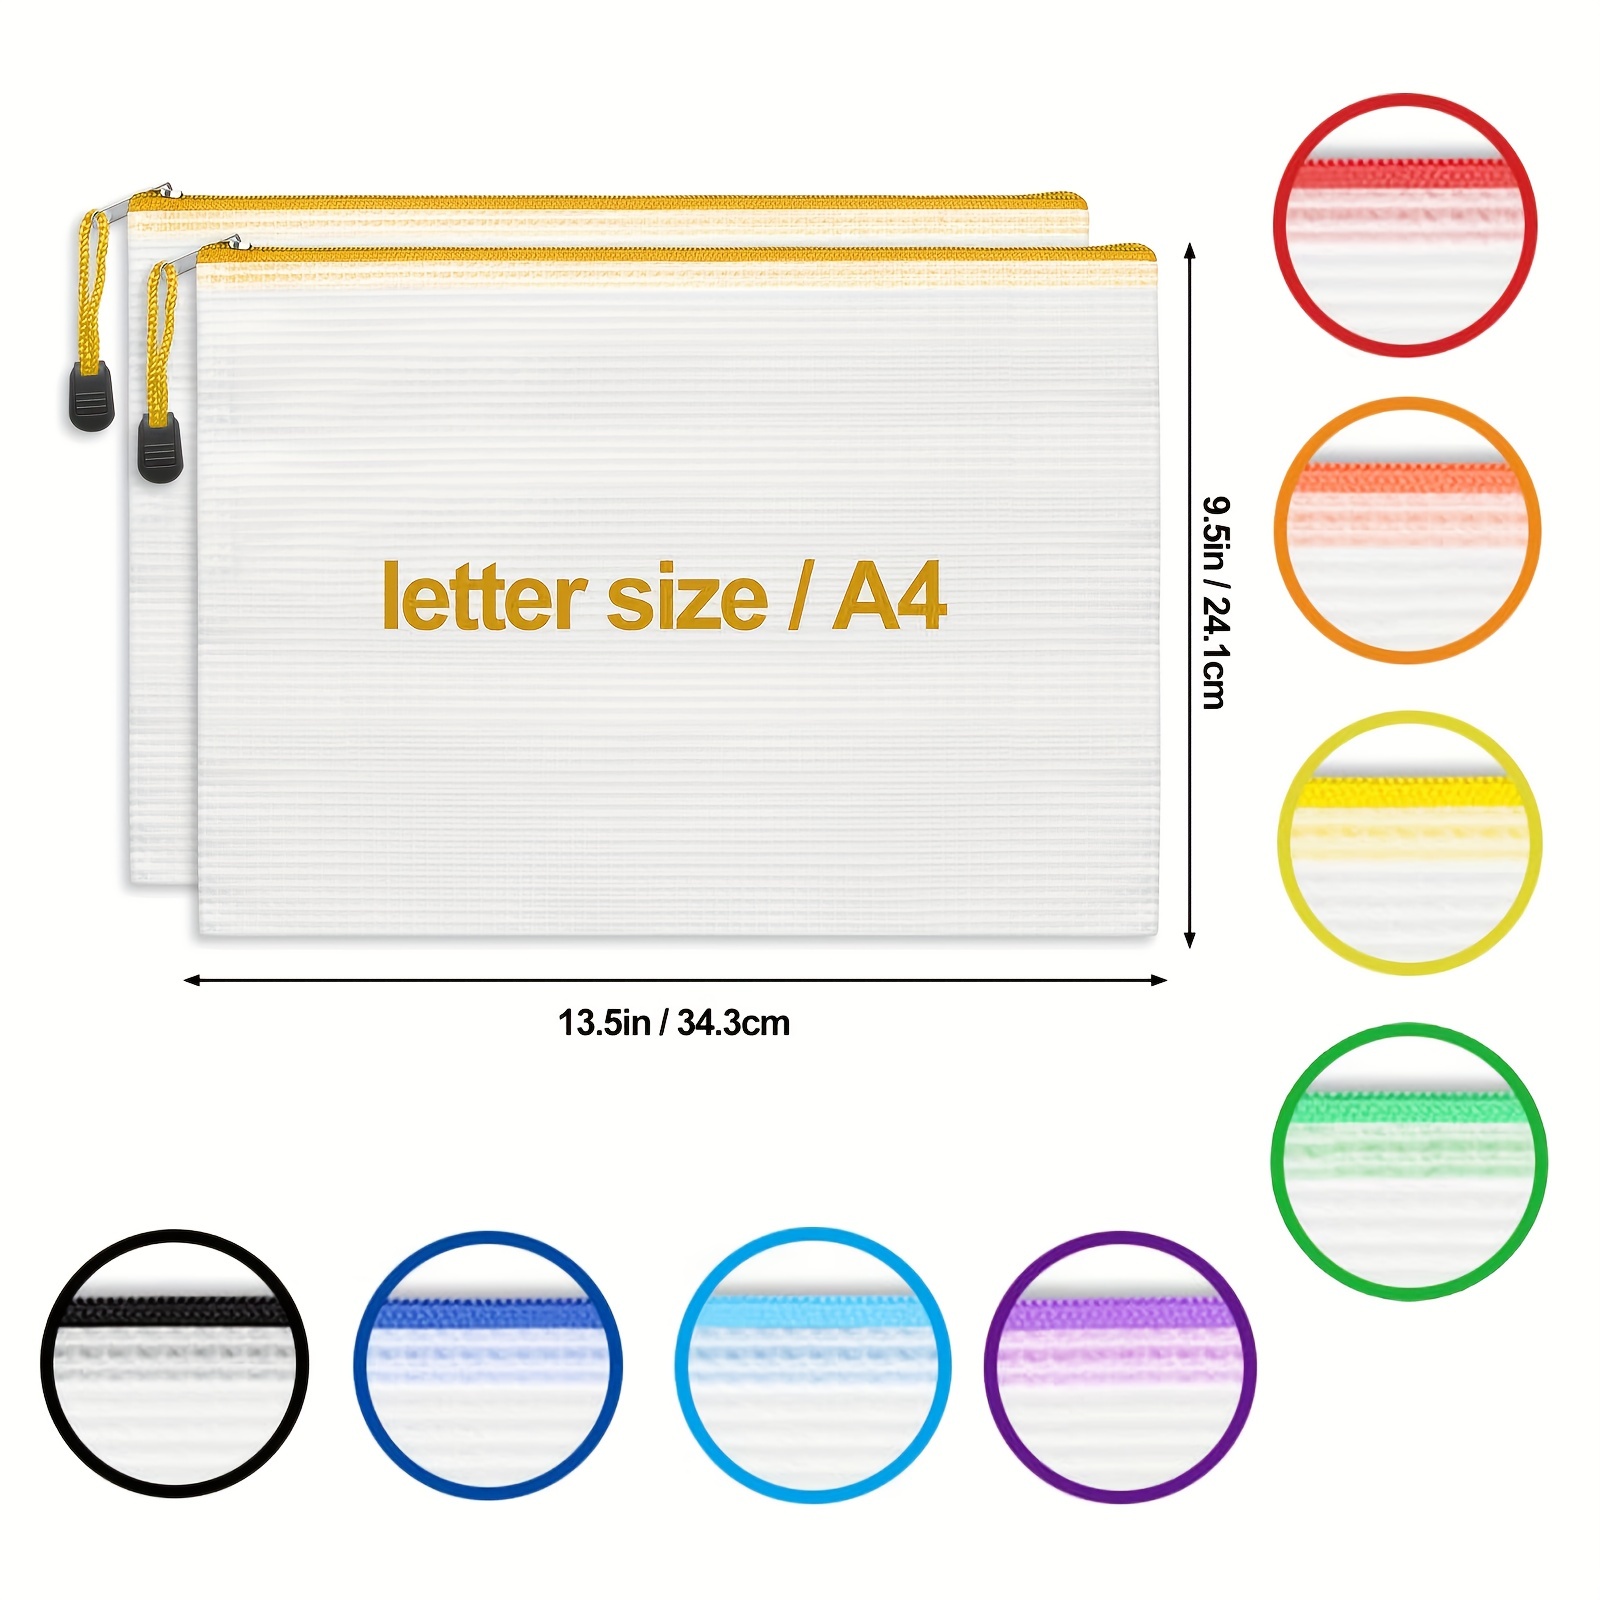 10 Pcs Mesh Zipper Pouch Bags,5 Colors Letter Size A4 Size